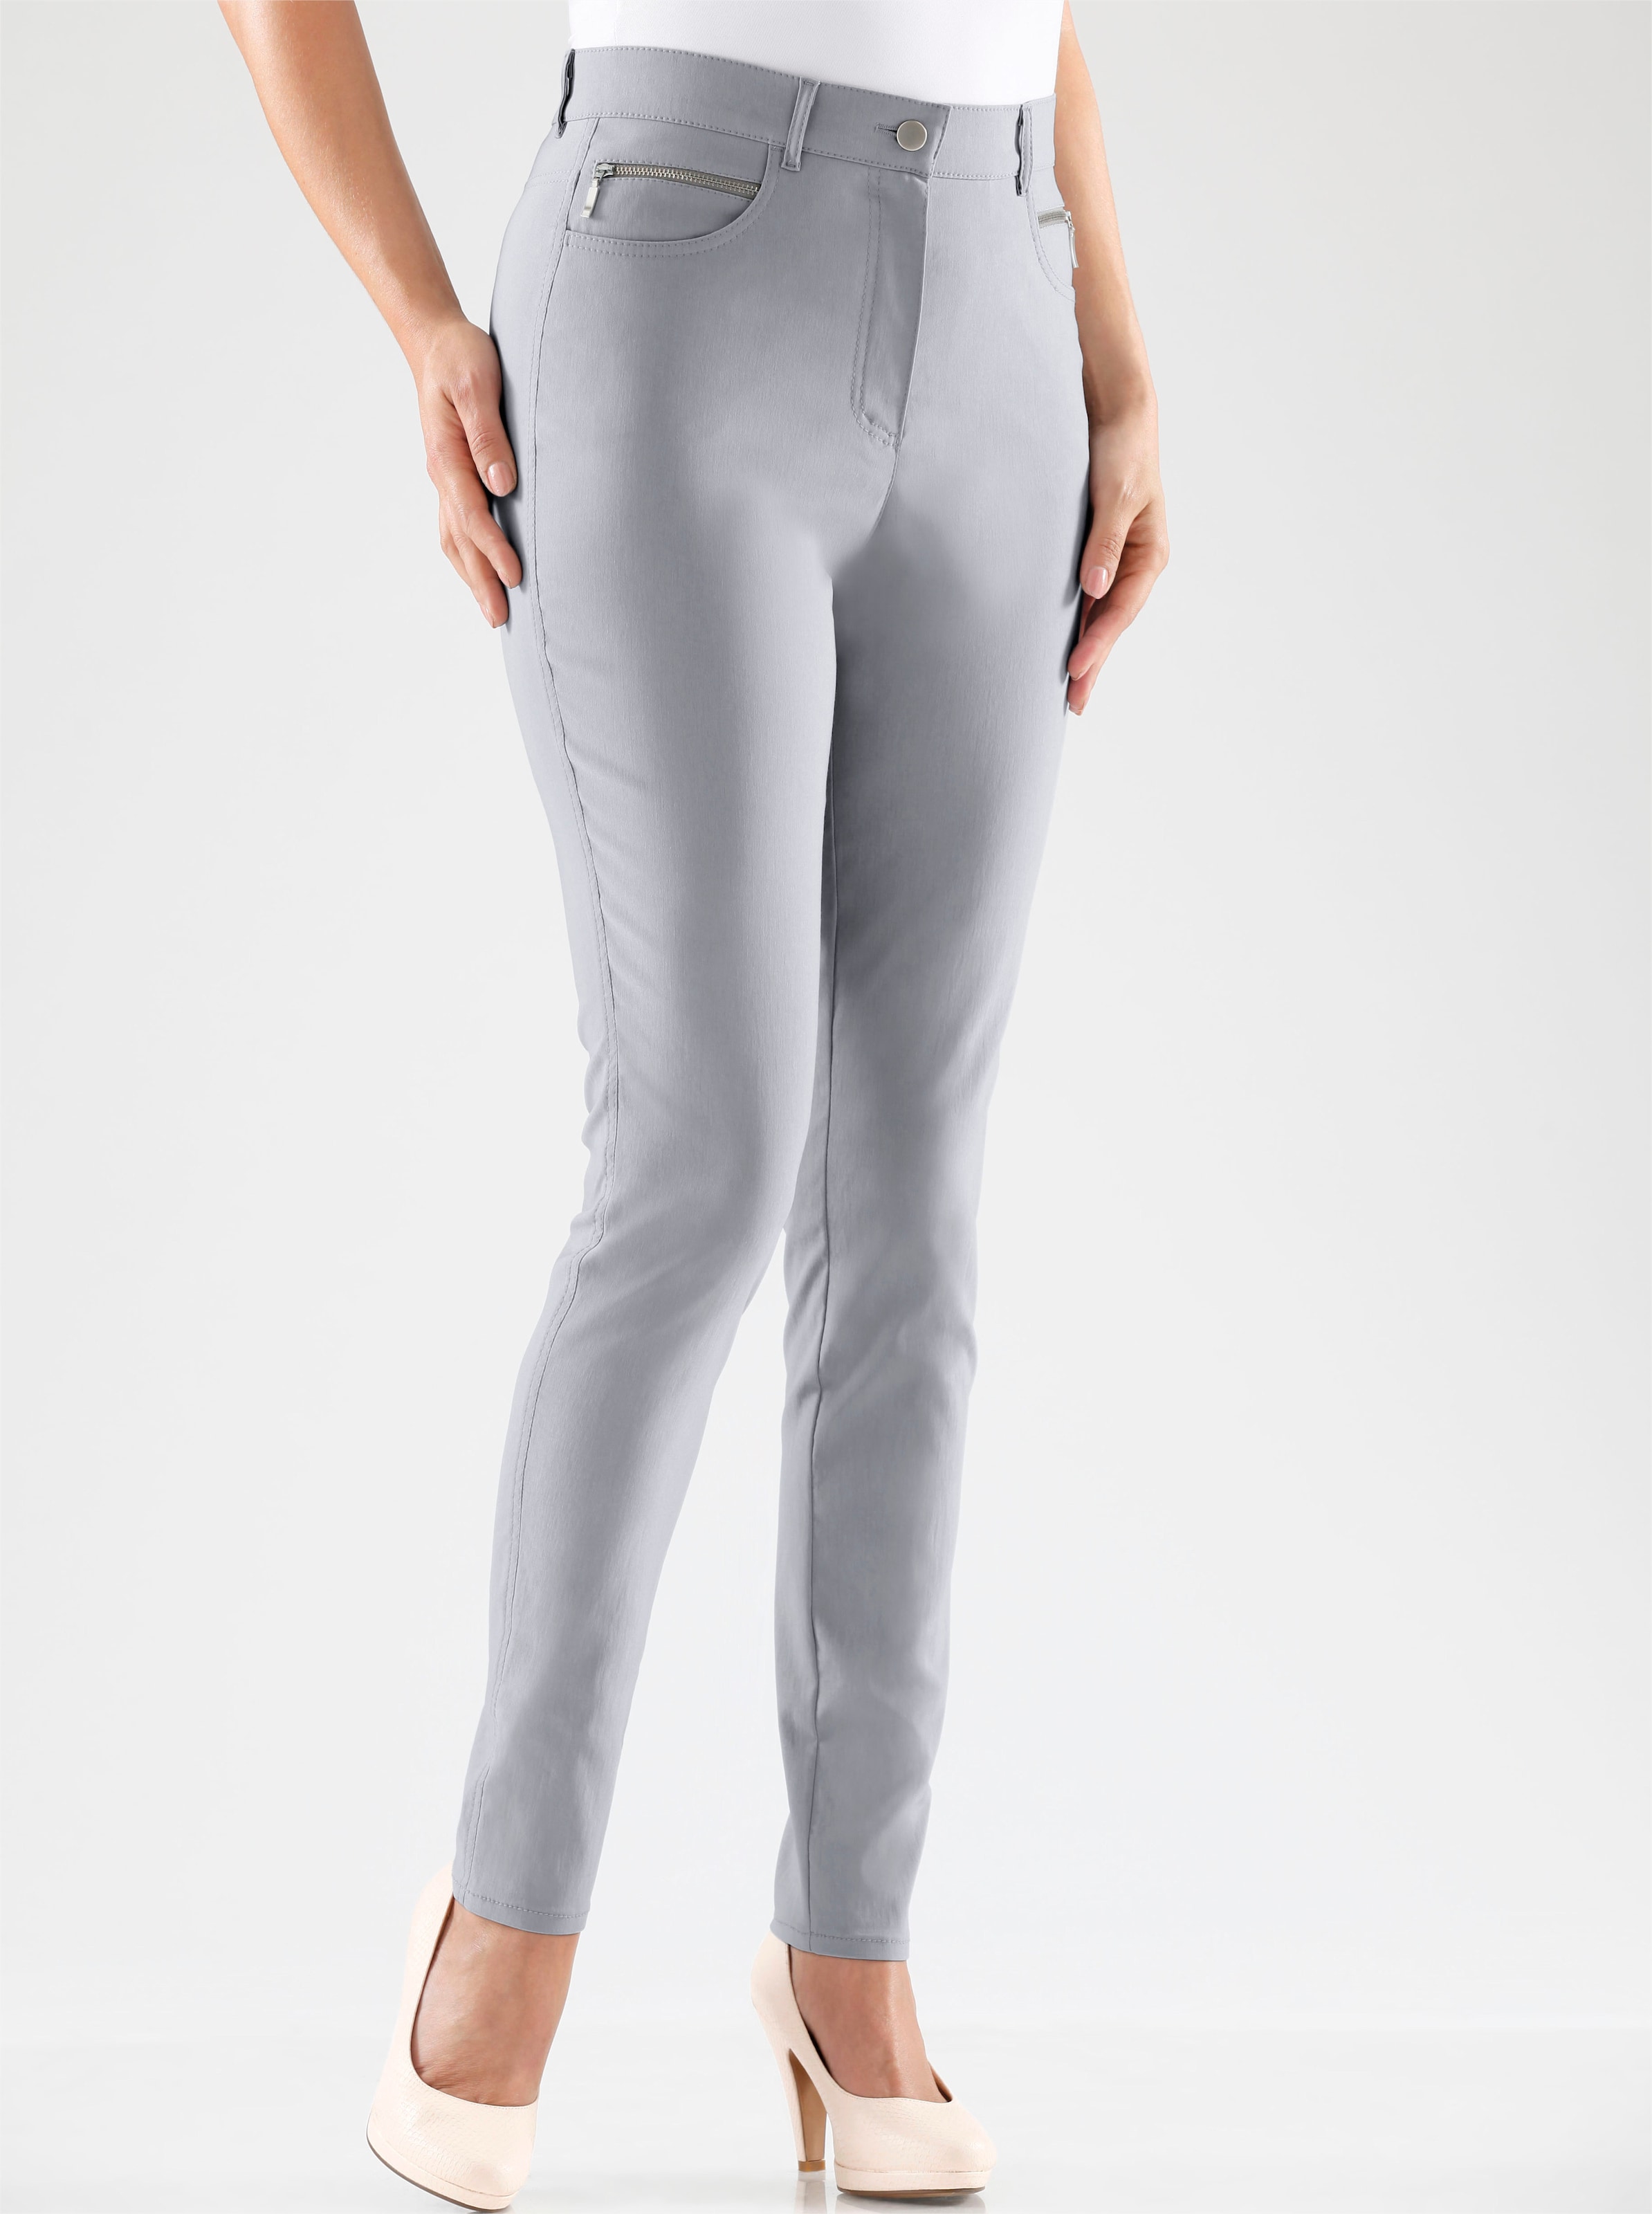 Witt Damen Stretch-Hose mit Zier-Taschen vorne, grau